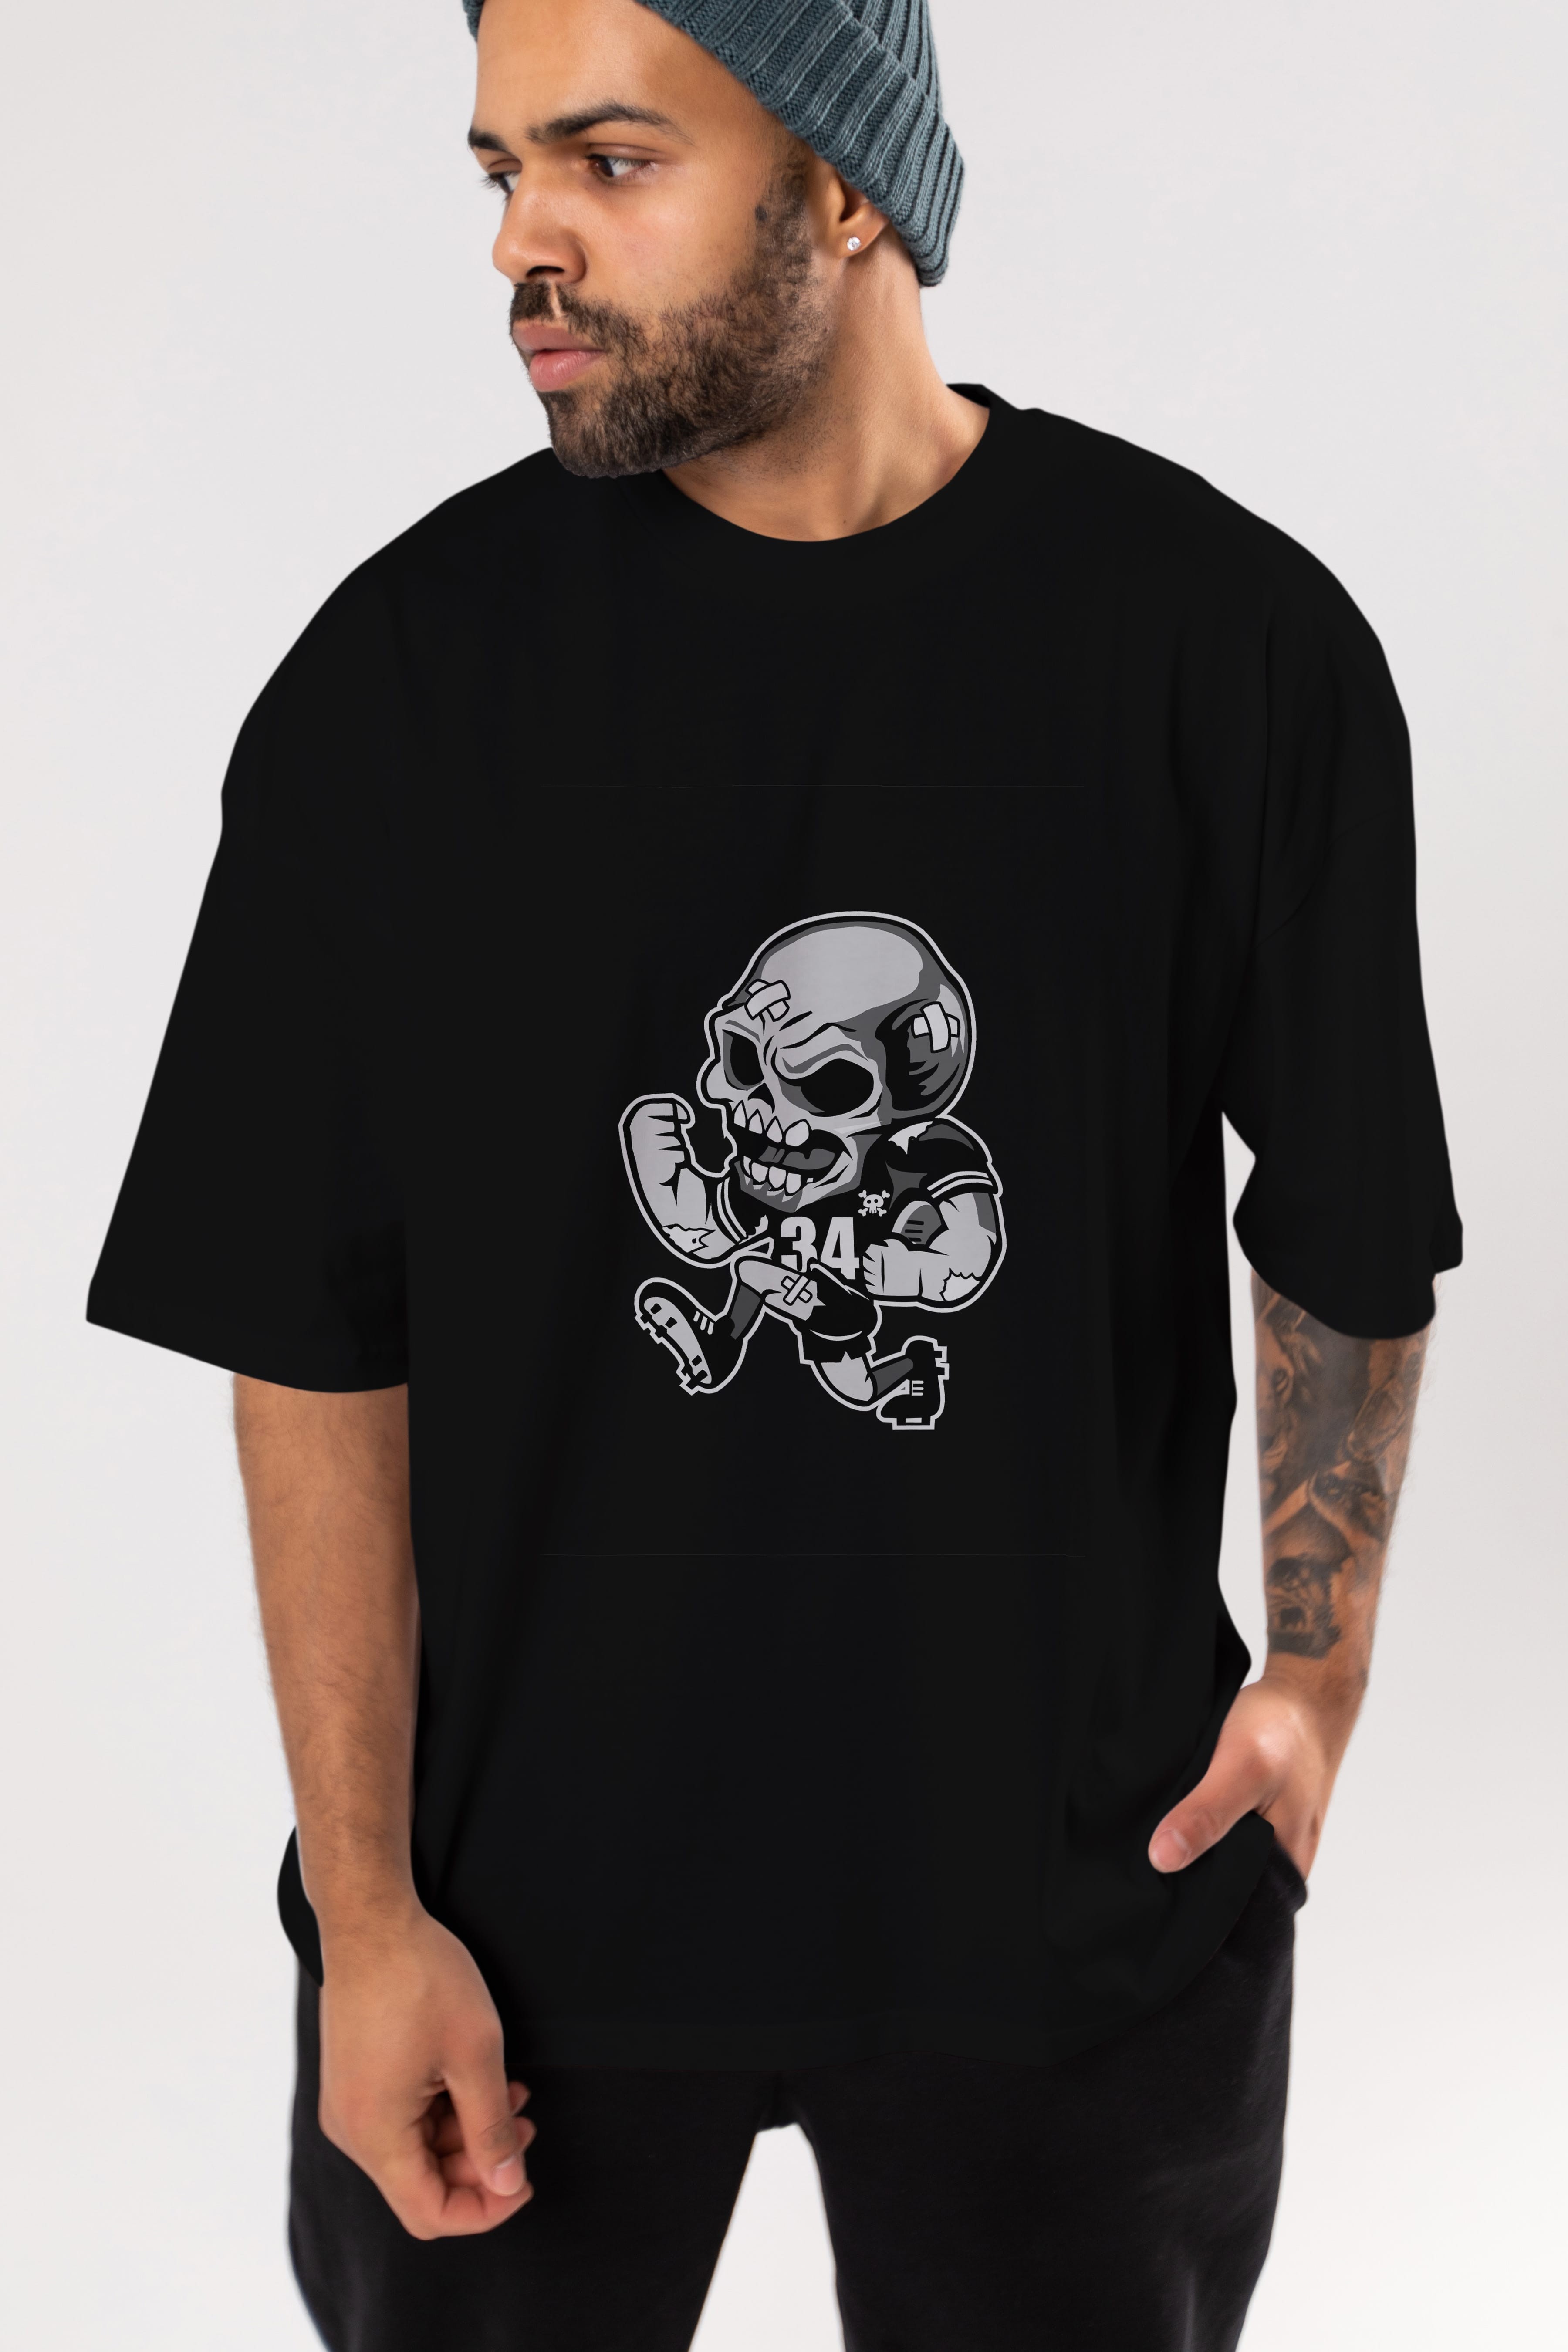 Skull Football Ön Baskılı Oversize t-shirt Erkek Kadın Unisex %100 Pamuk tişort